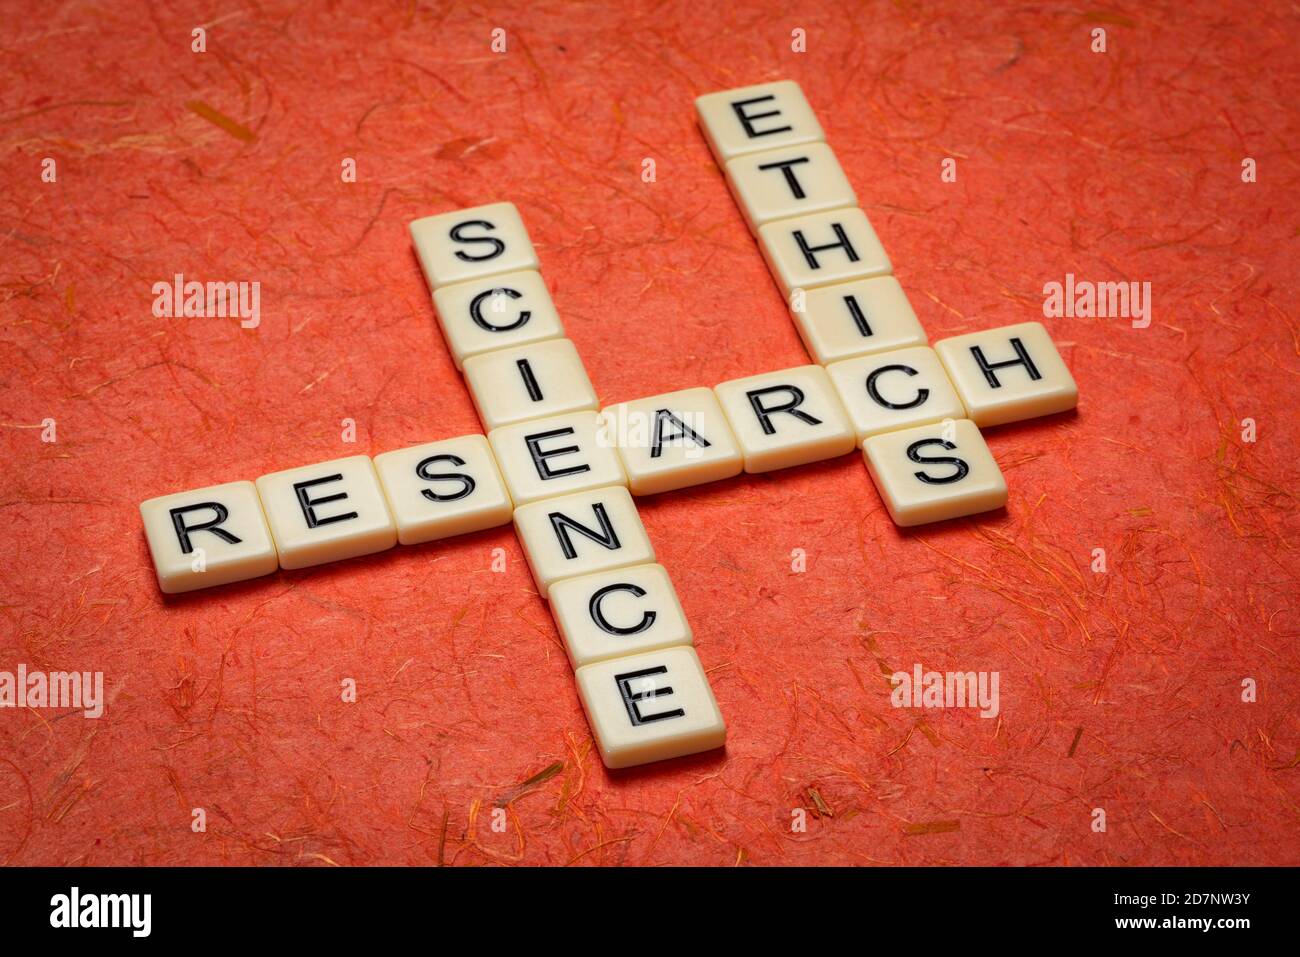 Forschung und Wissenschaft Ethik - Kreuzworträtsel in Elfenbein Buchstaben gegen Strukturiertes handgefertigtes Rindenpapier Stockfoto